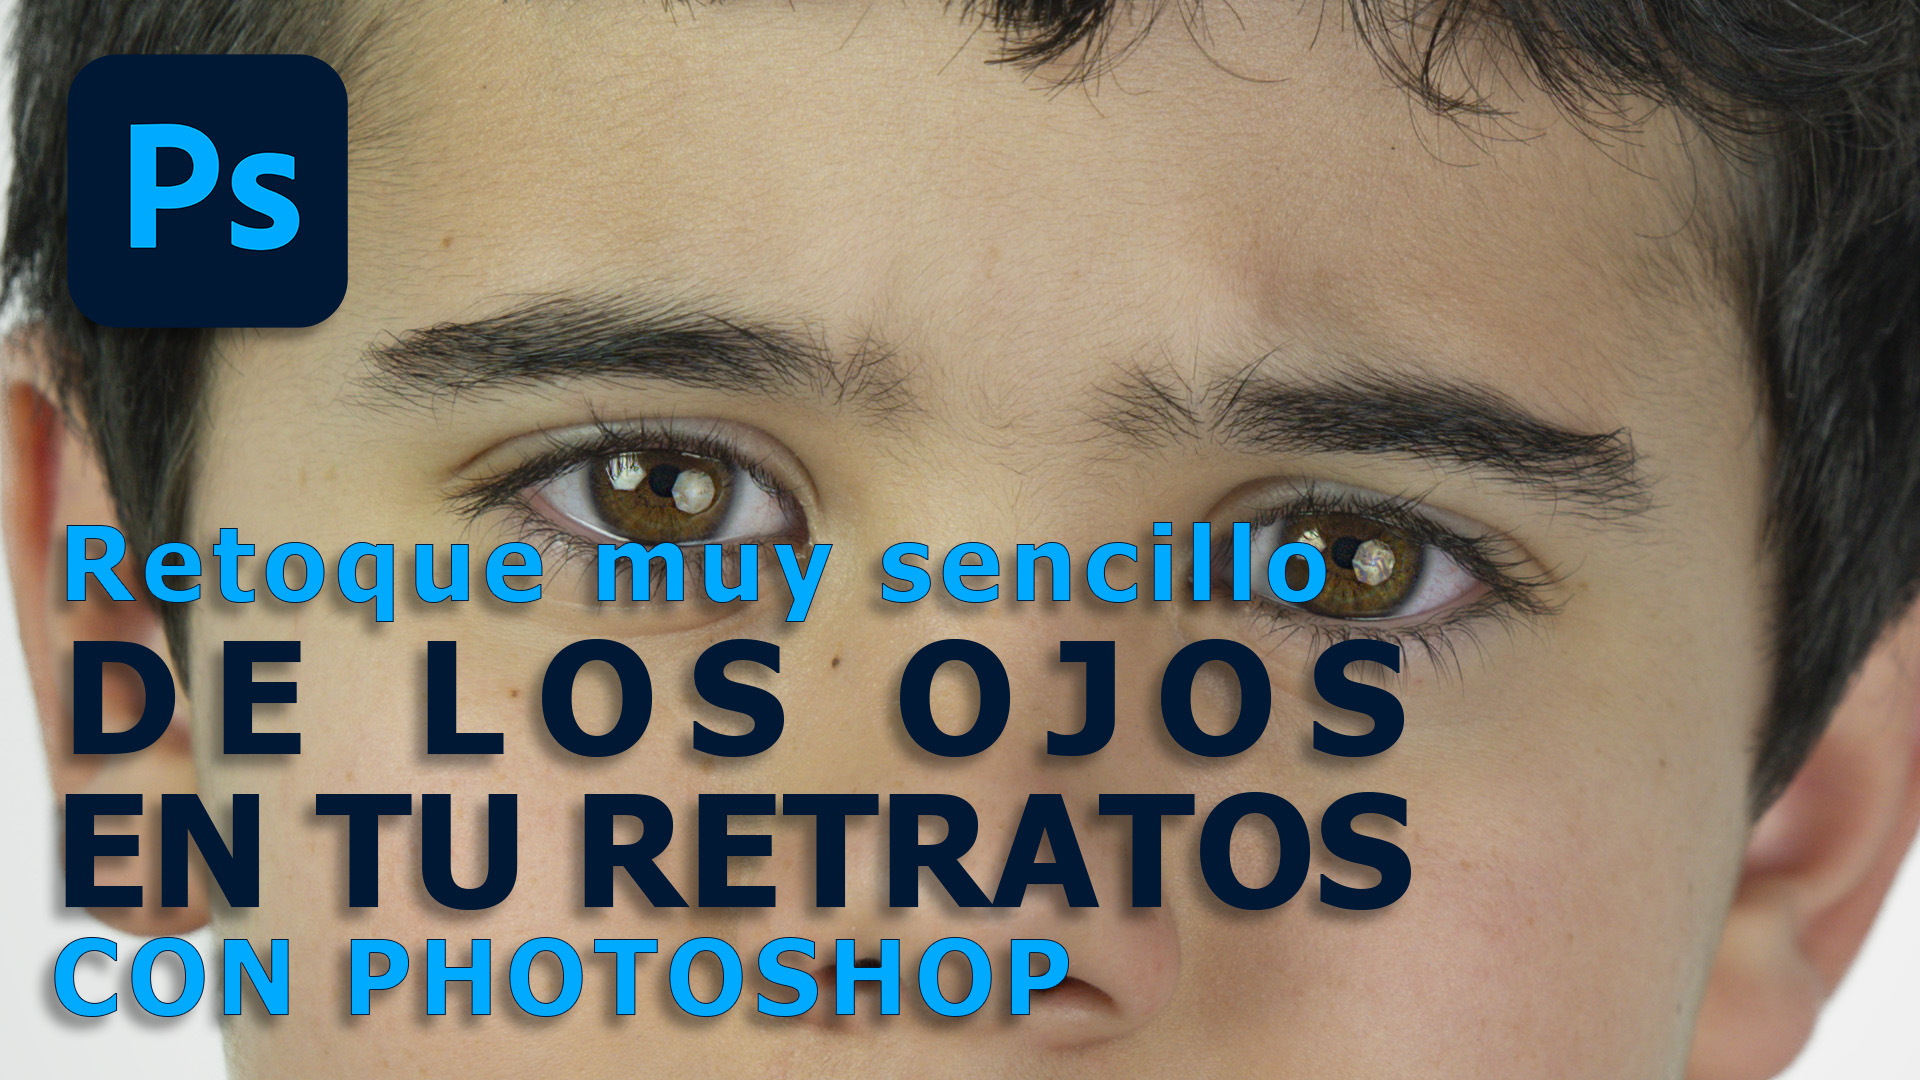 Améliorer les yeux des portraits avec photoshop